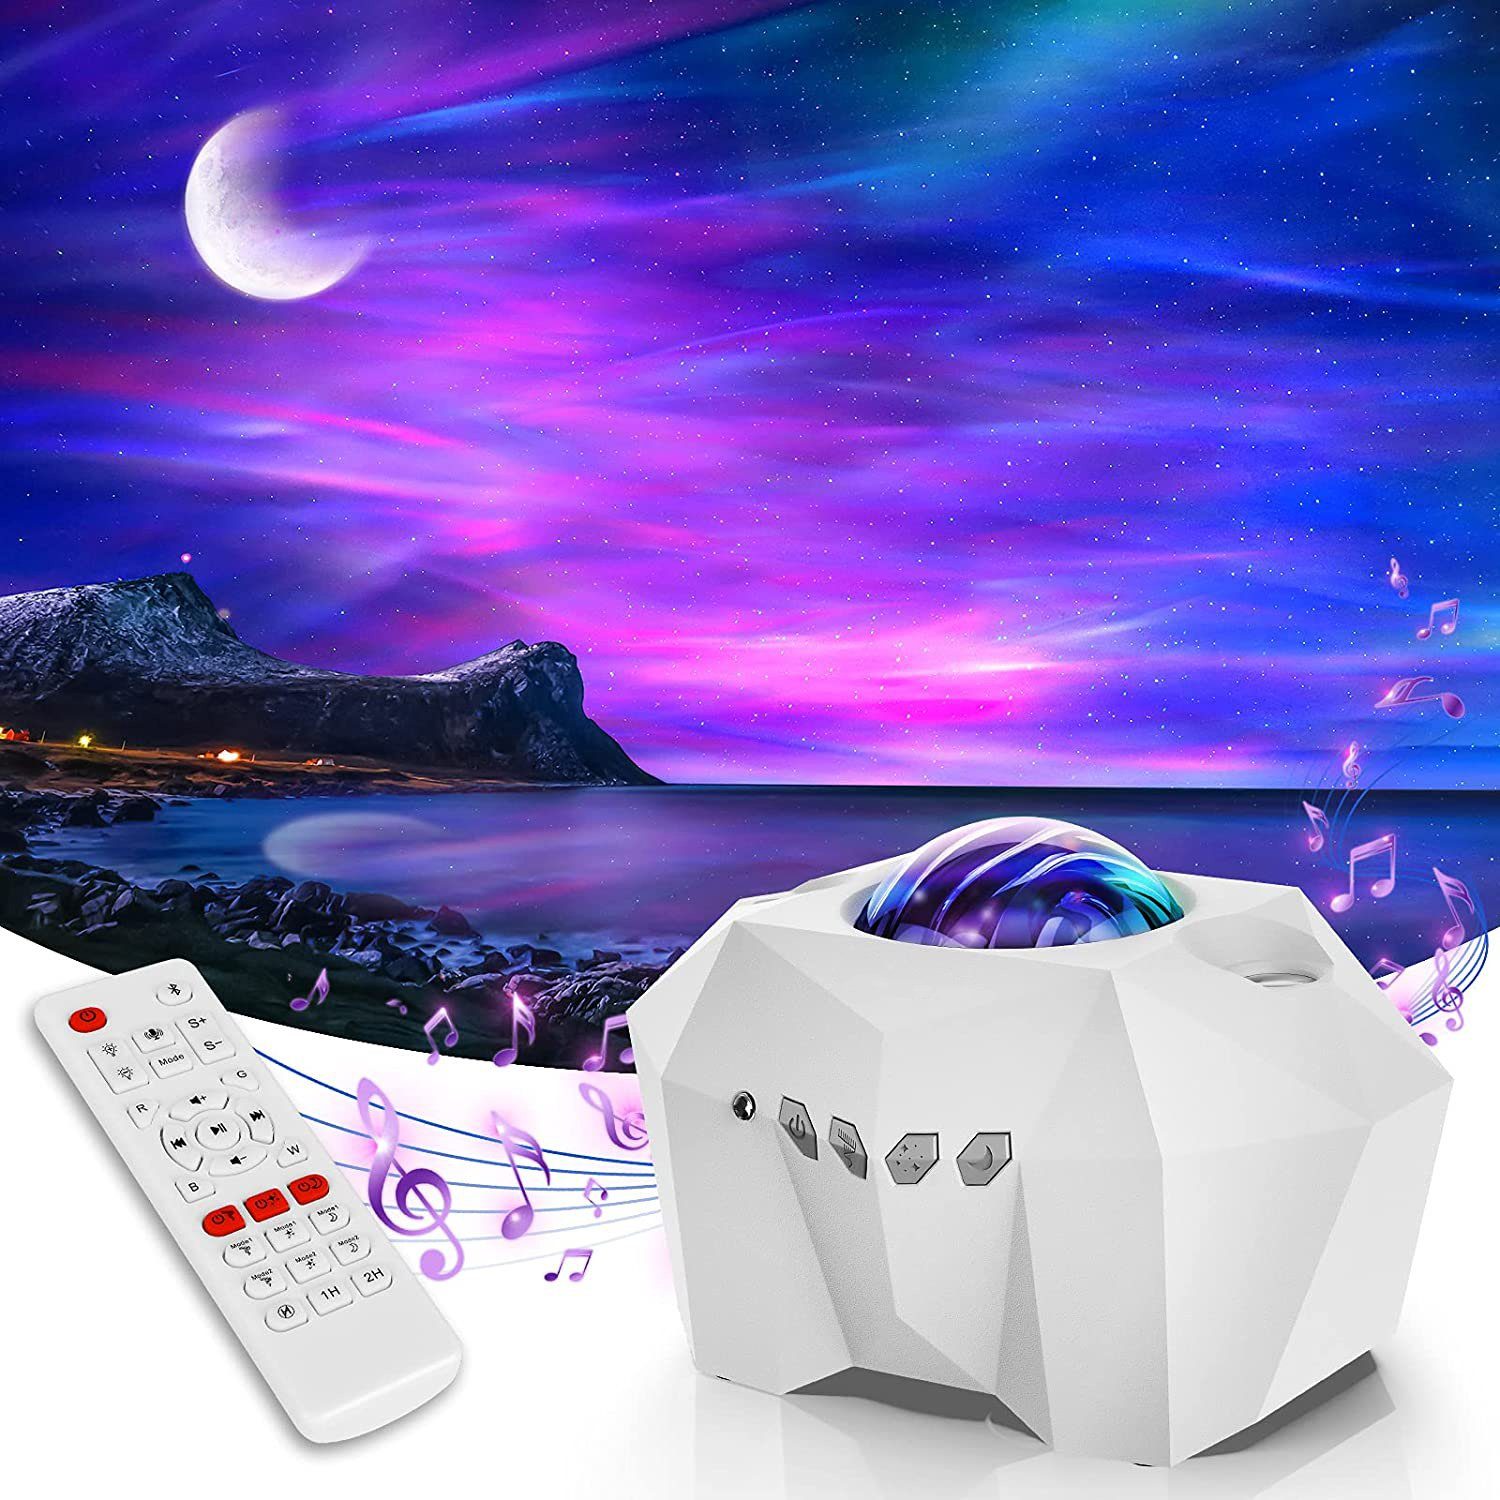 Rosnek LED Nachtlicht Sternenhimmel, Bluetooth, mit Fernbedienung, für Schlafzimmer Party, Hifi-Stereo-Musiklautsprecher Weiß